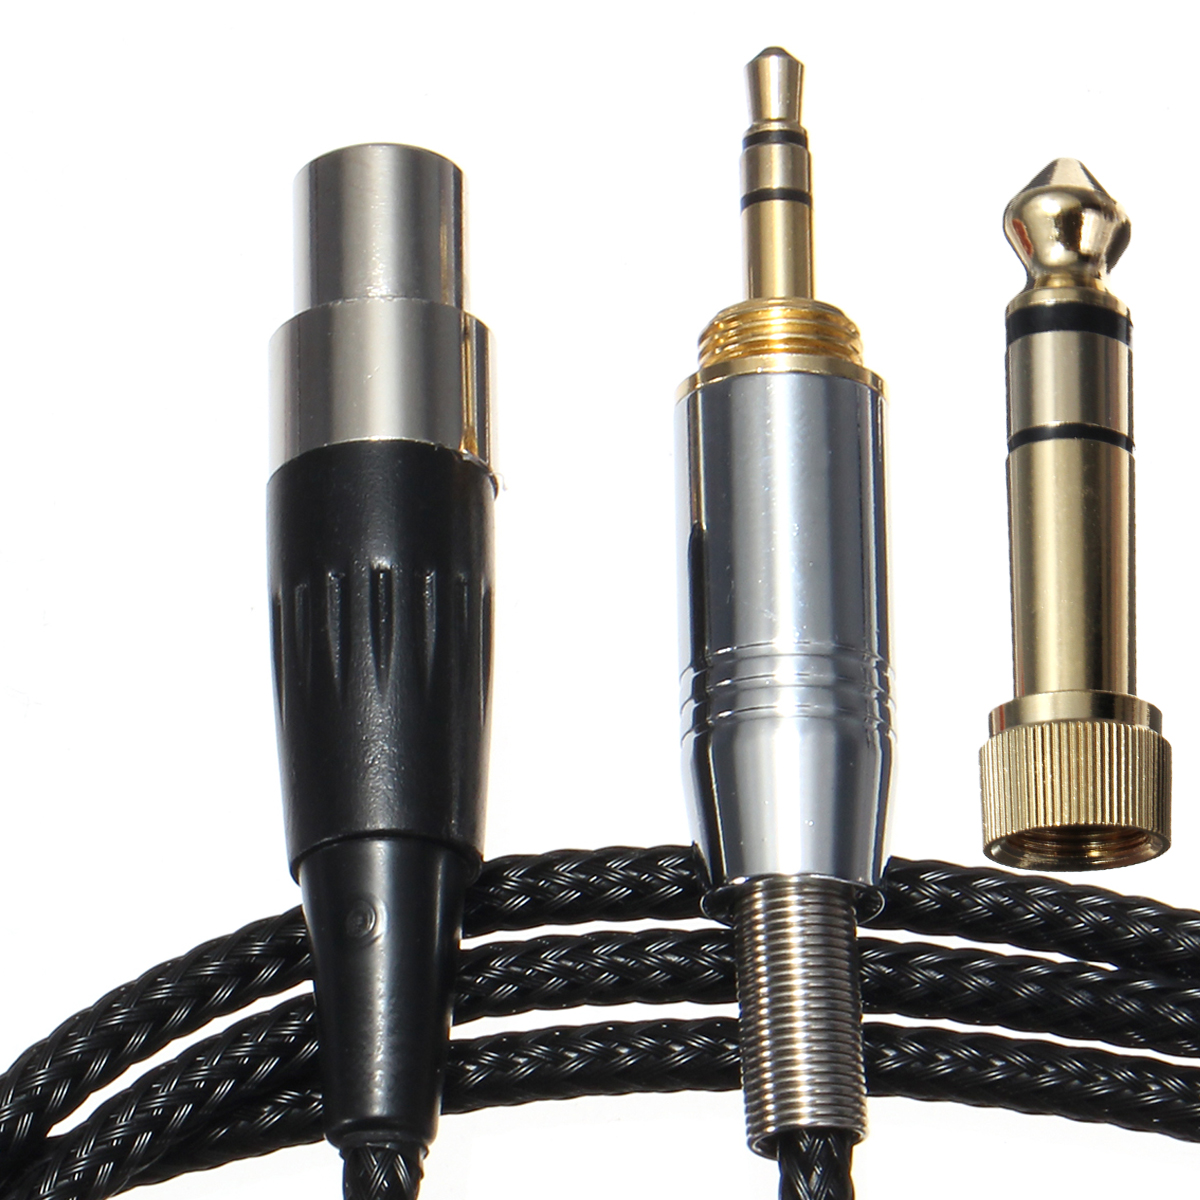 12M-Headphone-Cable-For-AKG-K141-K171-K181-Q701-K702-K271S-K271MKII-K271-K240-1143085